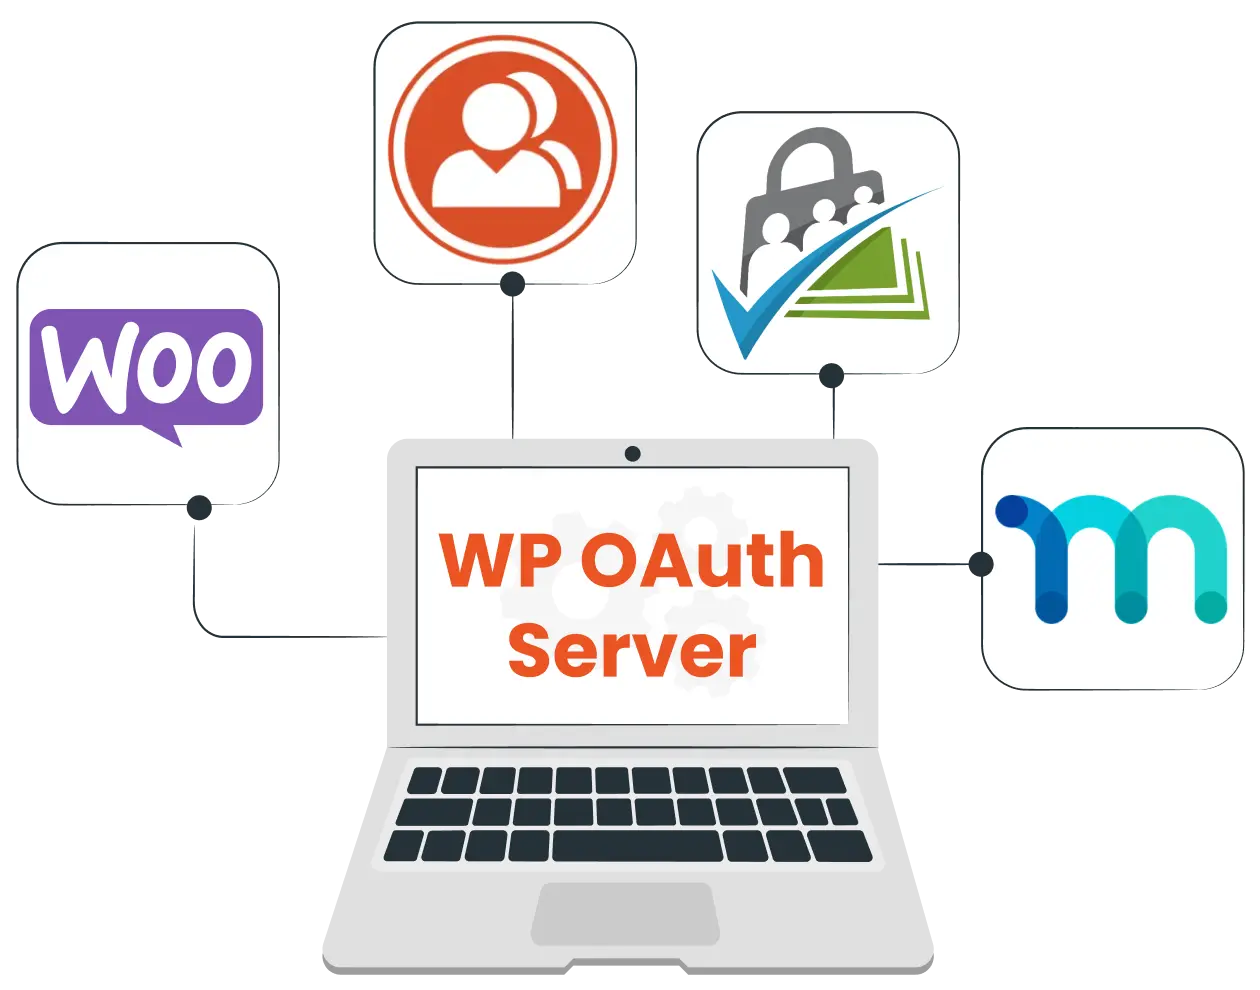 멤버십 통합 - WP OAuth 서버